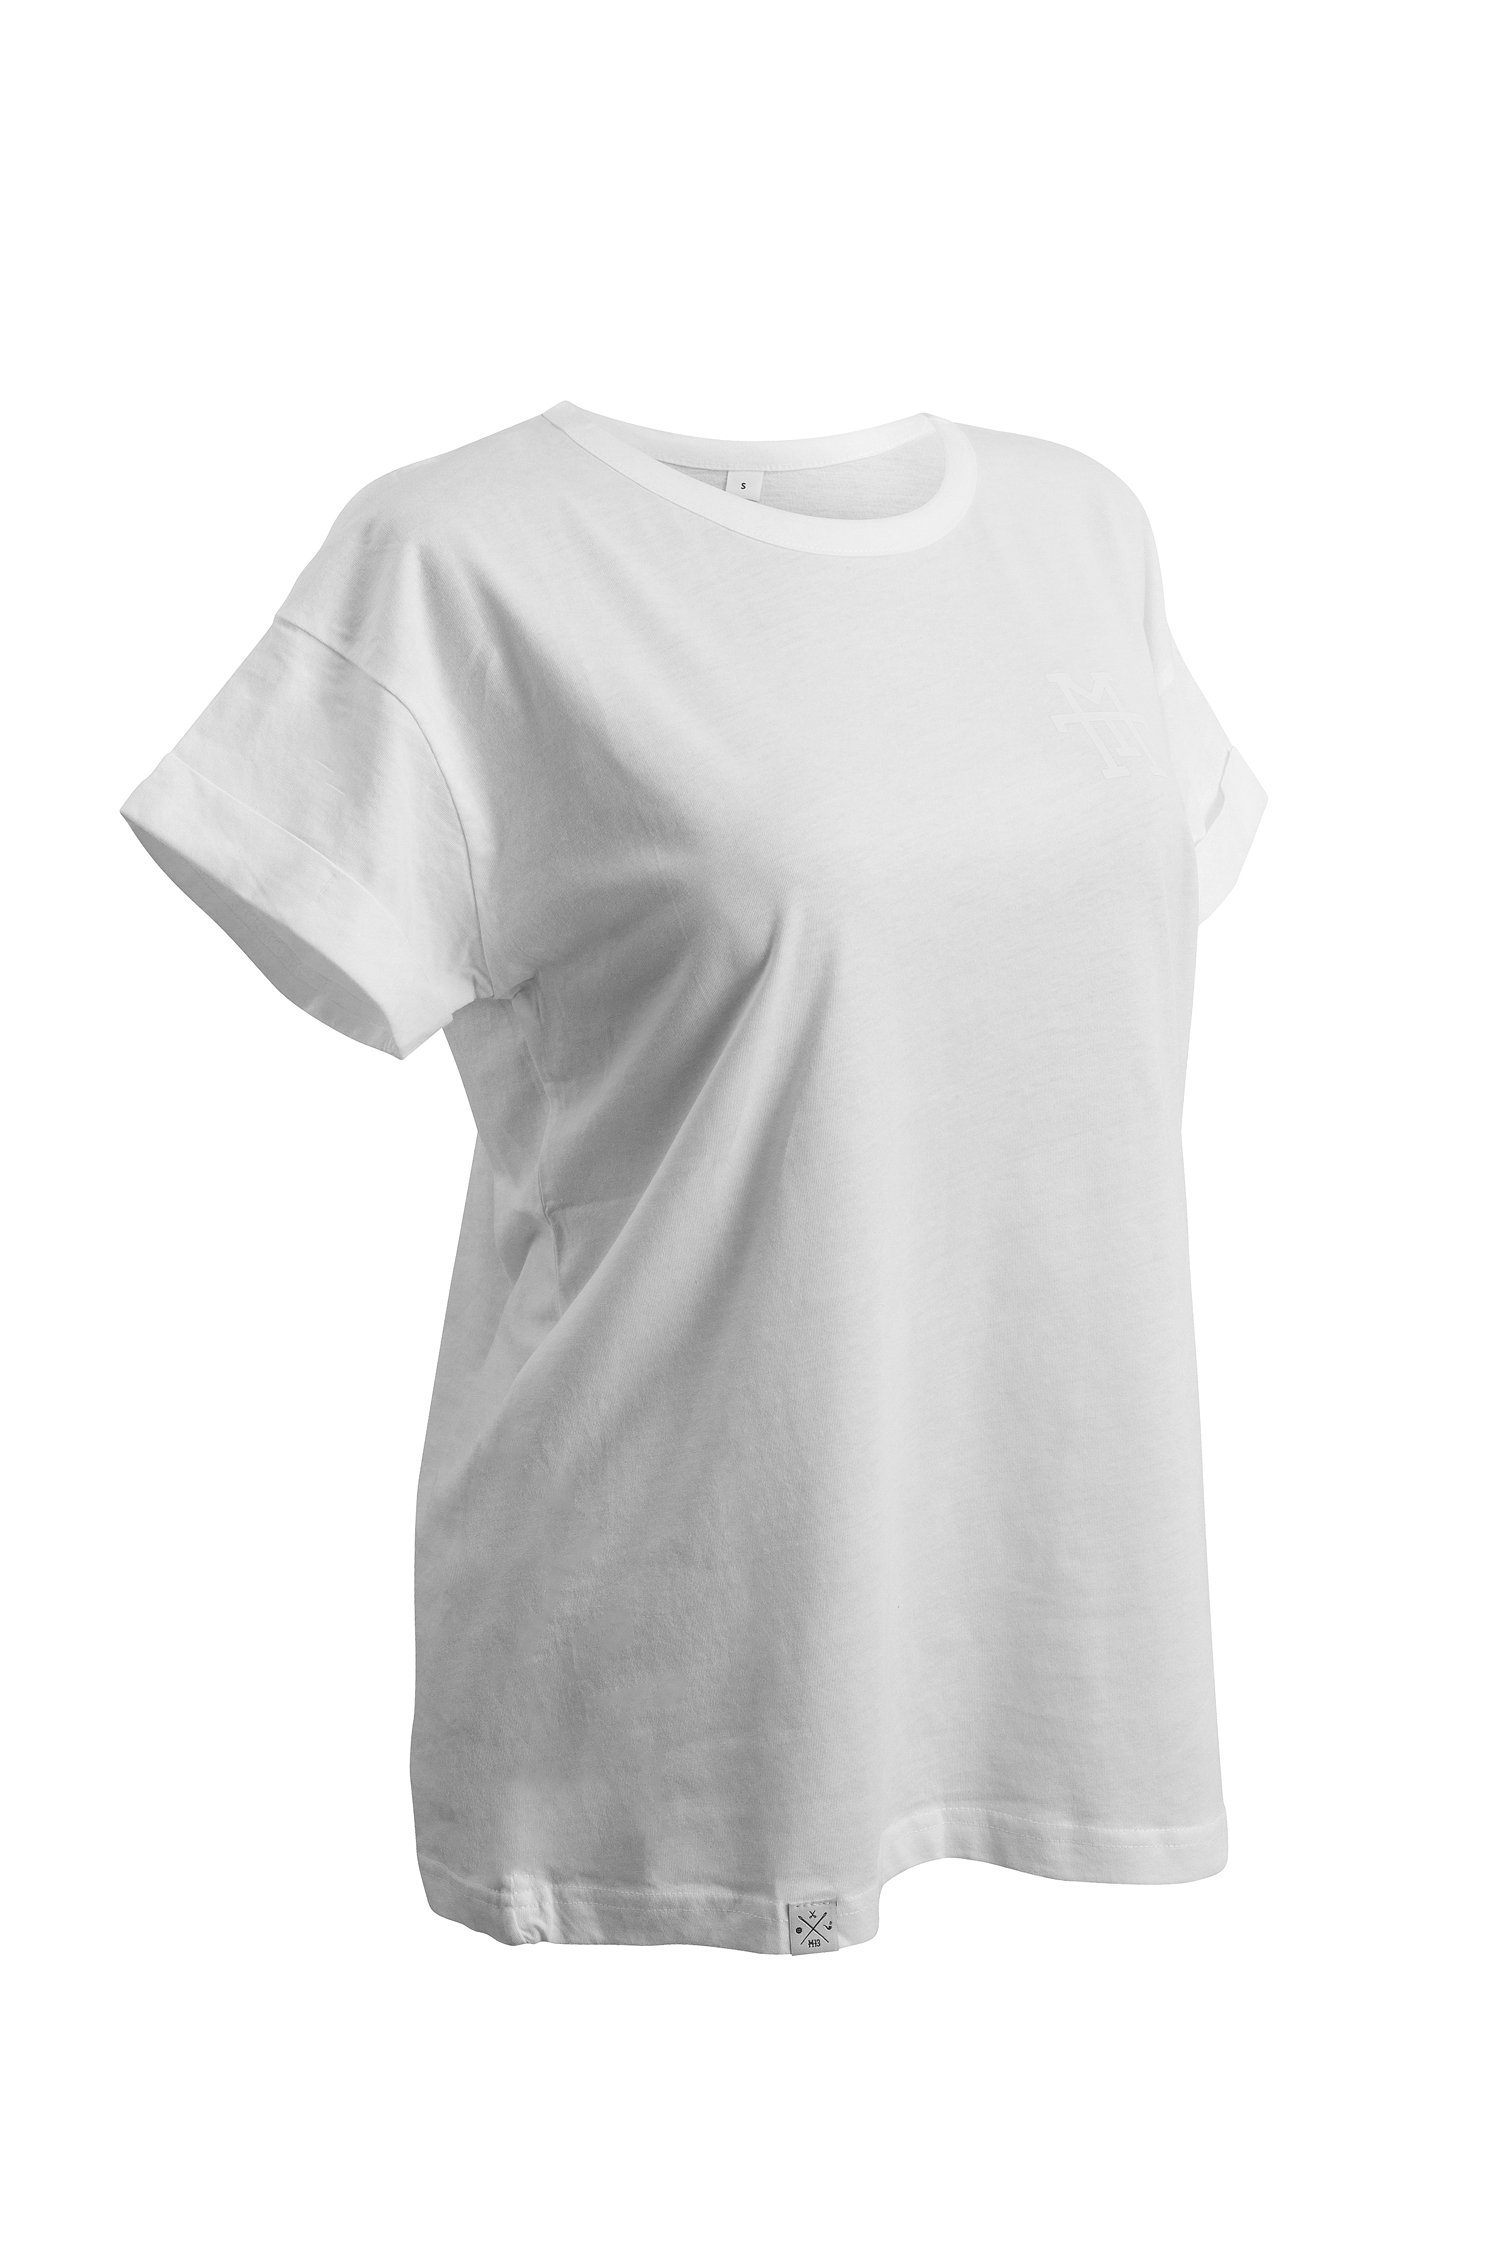 Manufaktur13 T-Shirt Boyfriend T-Shirt - Oversize 100% Weiß T-Shirt Baumwolle